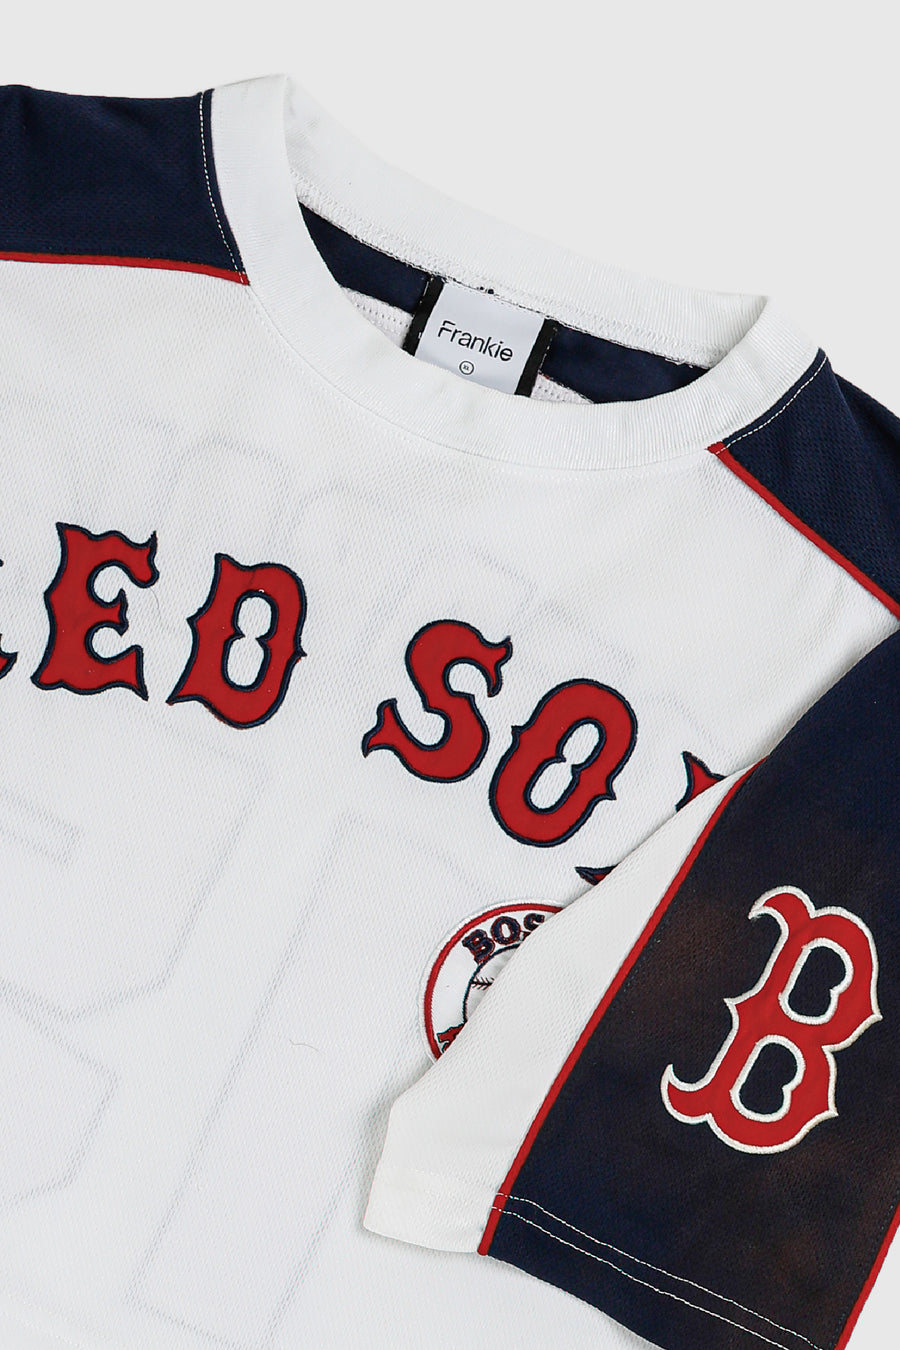 Rework Crop Red Sox Jersey - XL